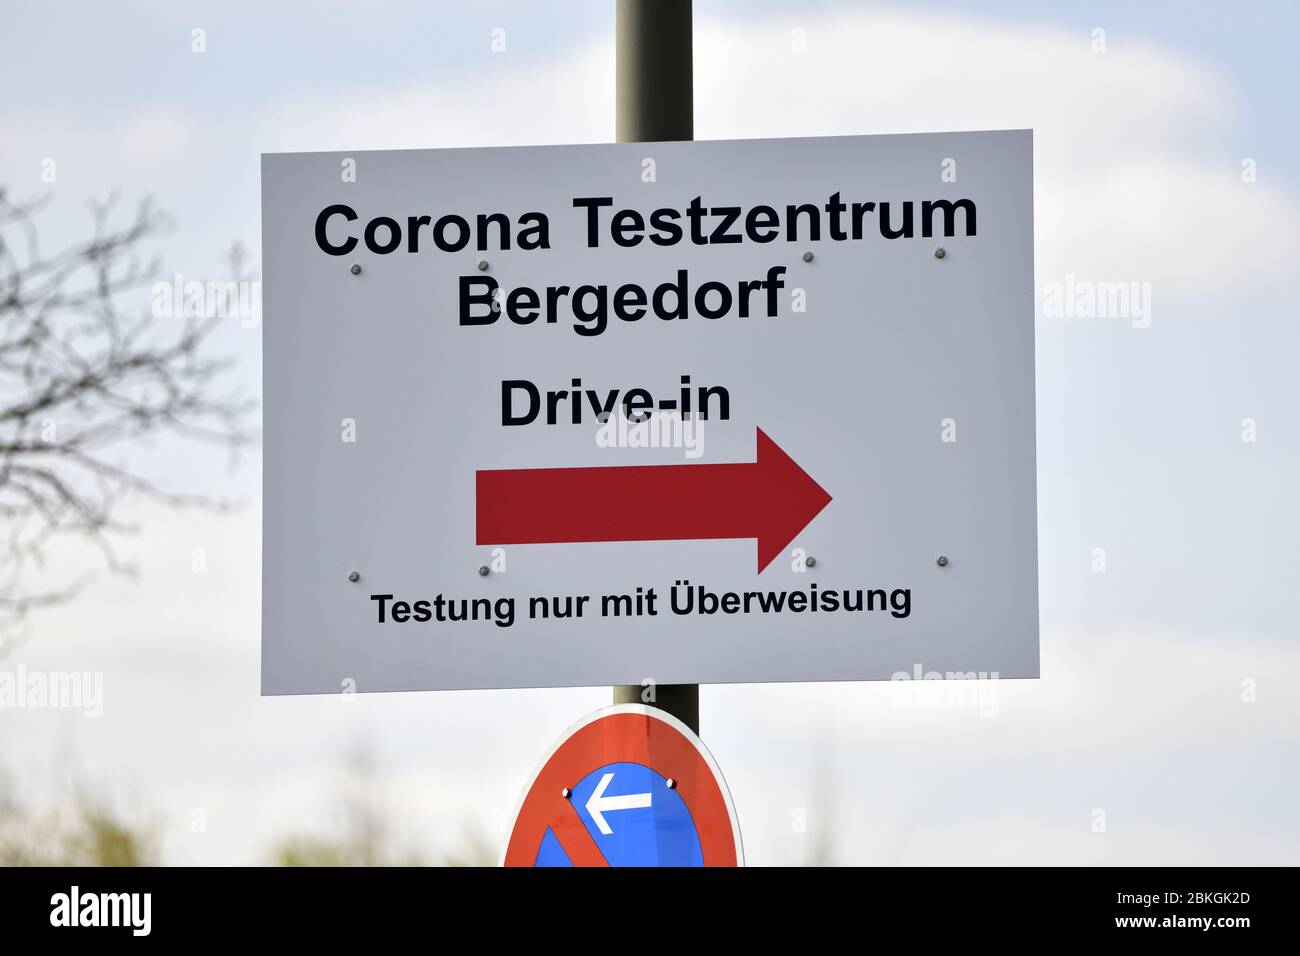 Guide to Corona Test Center Bergedorf in Hamburg, Germany, Europe  /  Wegweiser zum Corona Testzentrum Bergedorf in Hamburg, Deutschland, Europa Stock Photo